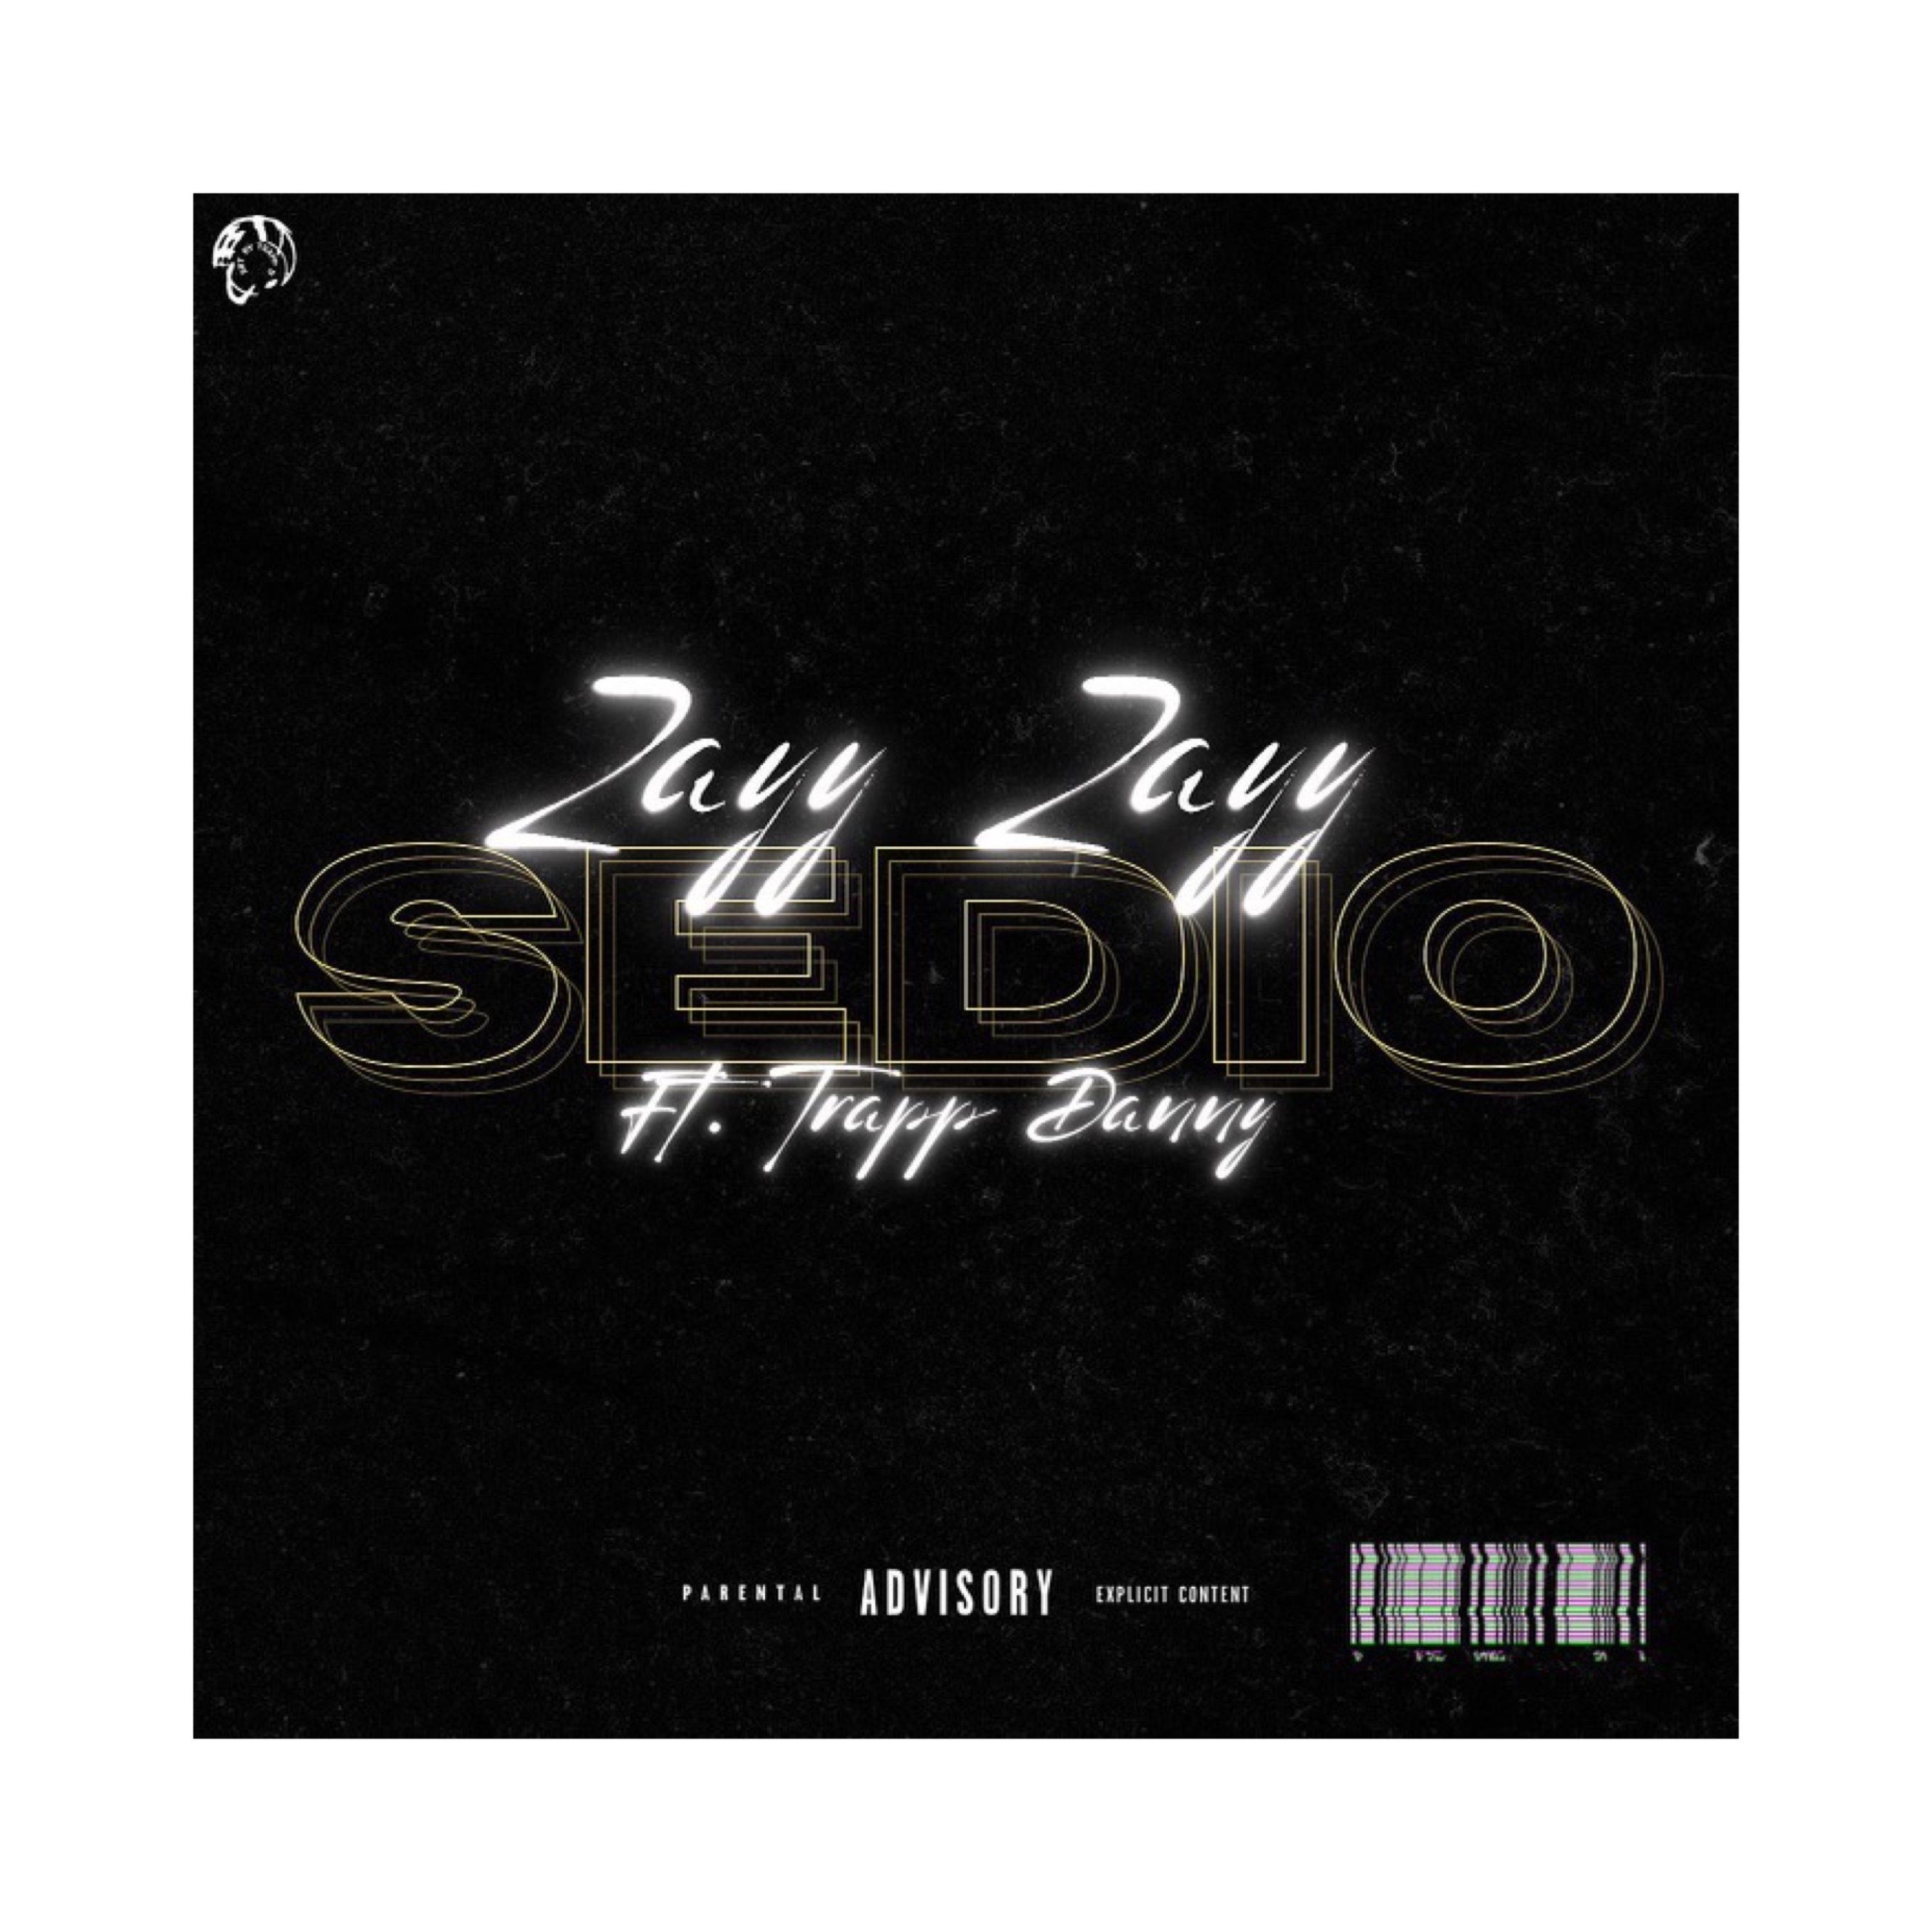 Zayy Zayy - Sedio (feat. Trapp Danny)